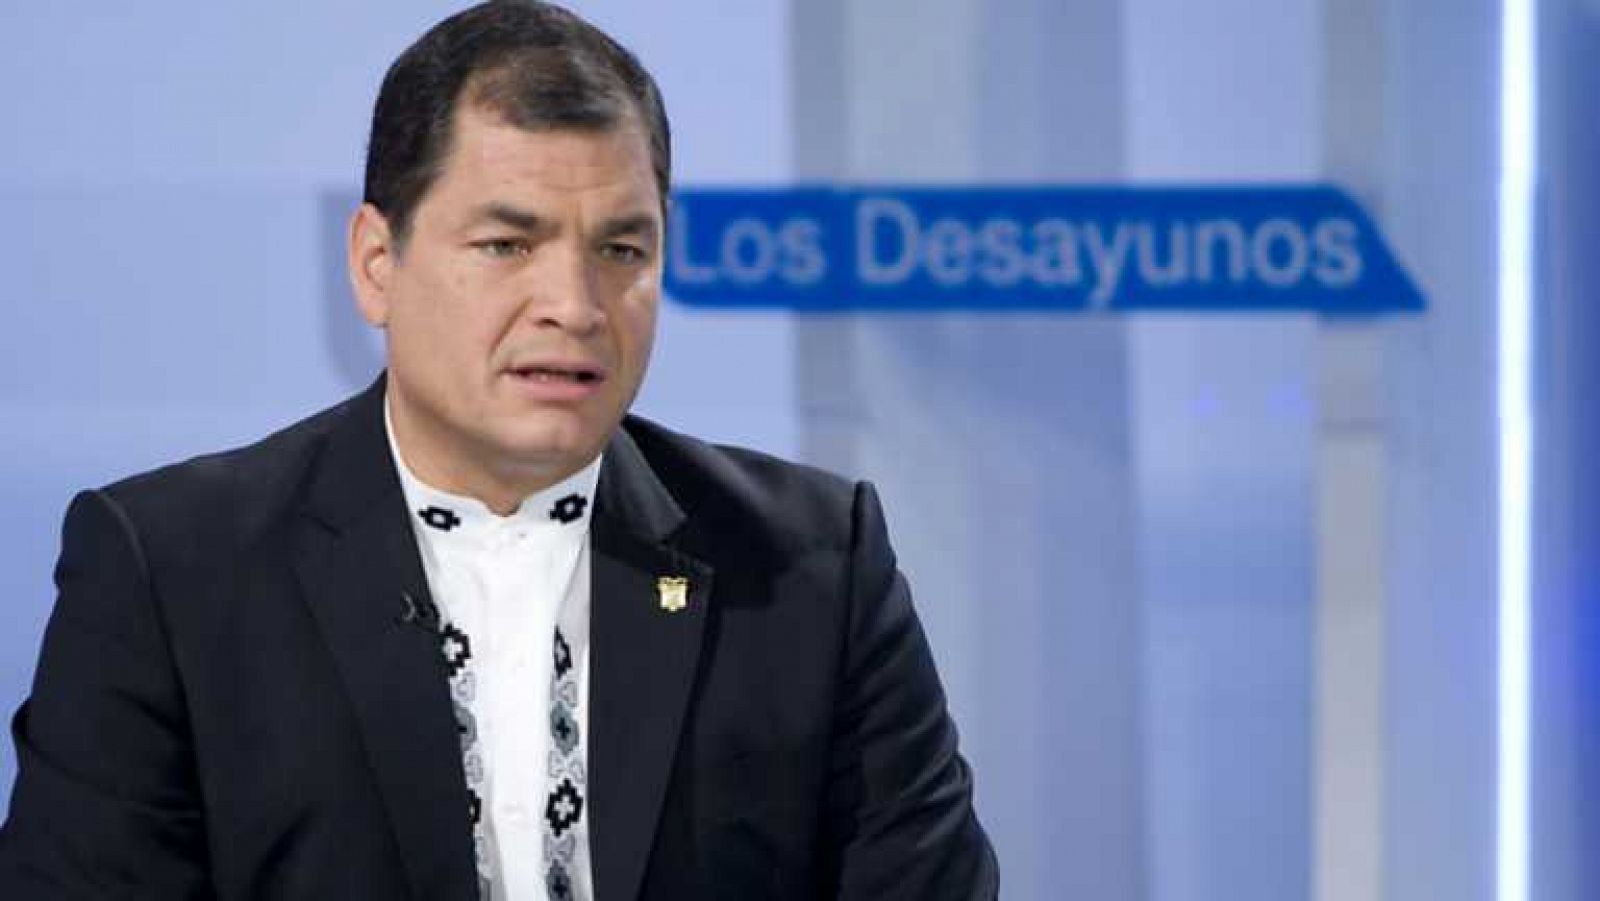 Los desayunos de TVE - Rafael Correa, presidente de Ecuador, y Diego Carcedo, excorresponsal en Lisboa